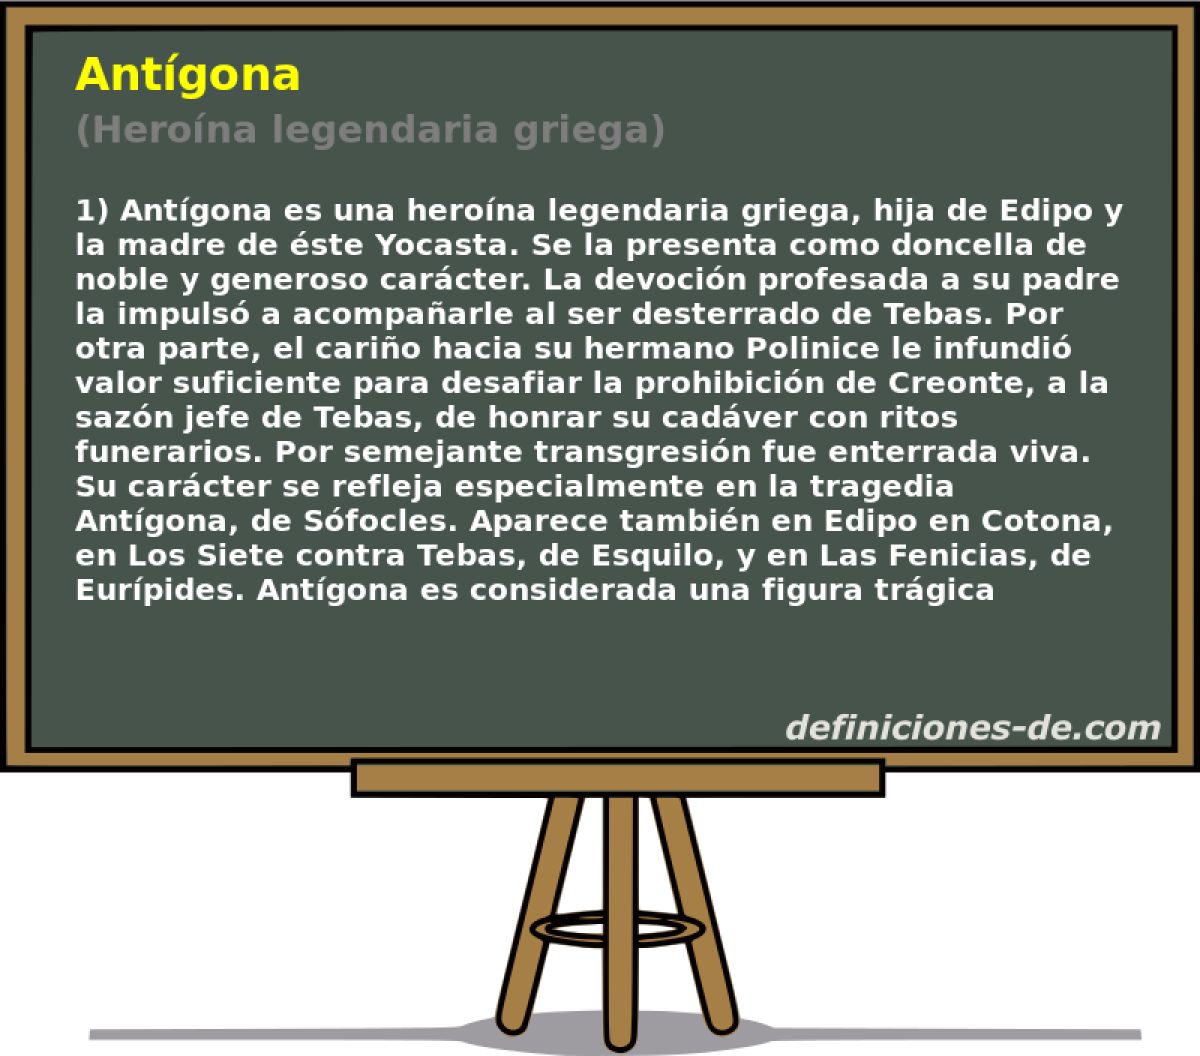 Antgona (Herona legendaria griega)